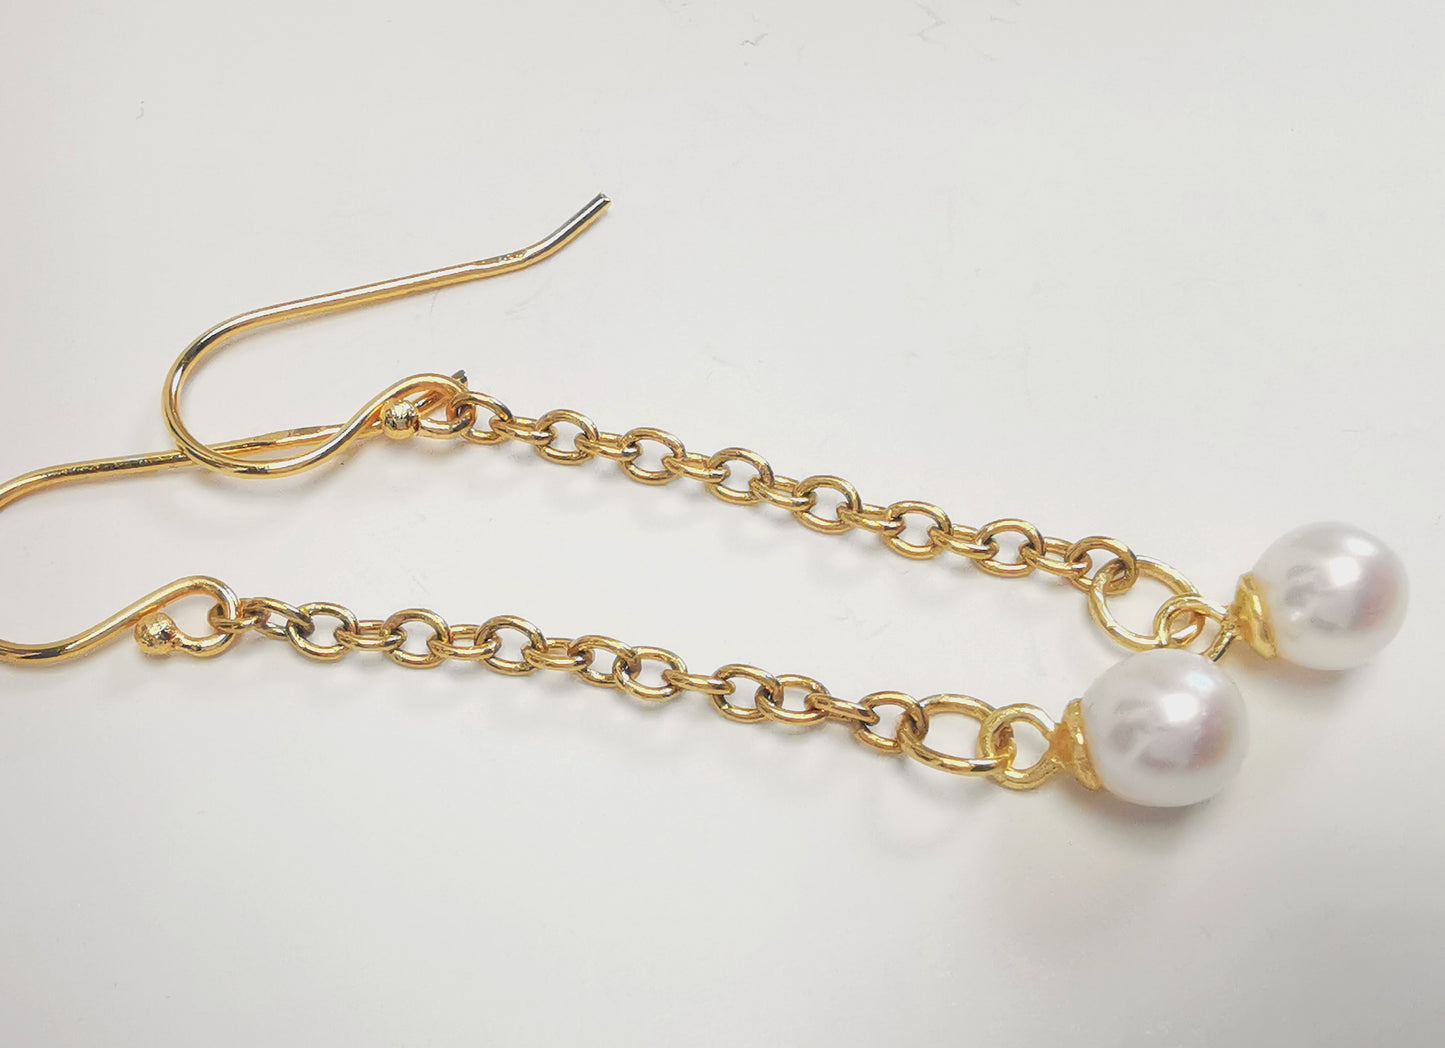 Boucles d'oreilles perles de culture blanches rondes 5mm sur pendants et chaînes plaqués or. Présentées à l'horizontale, l'une au dessus de l'autre, perles à droite, sur fond blanc. Vue de dessus.